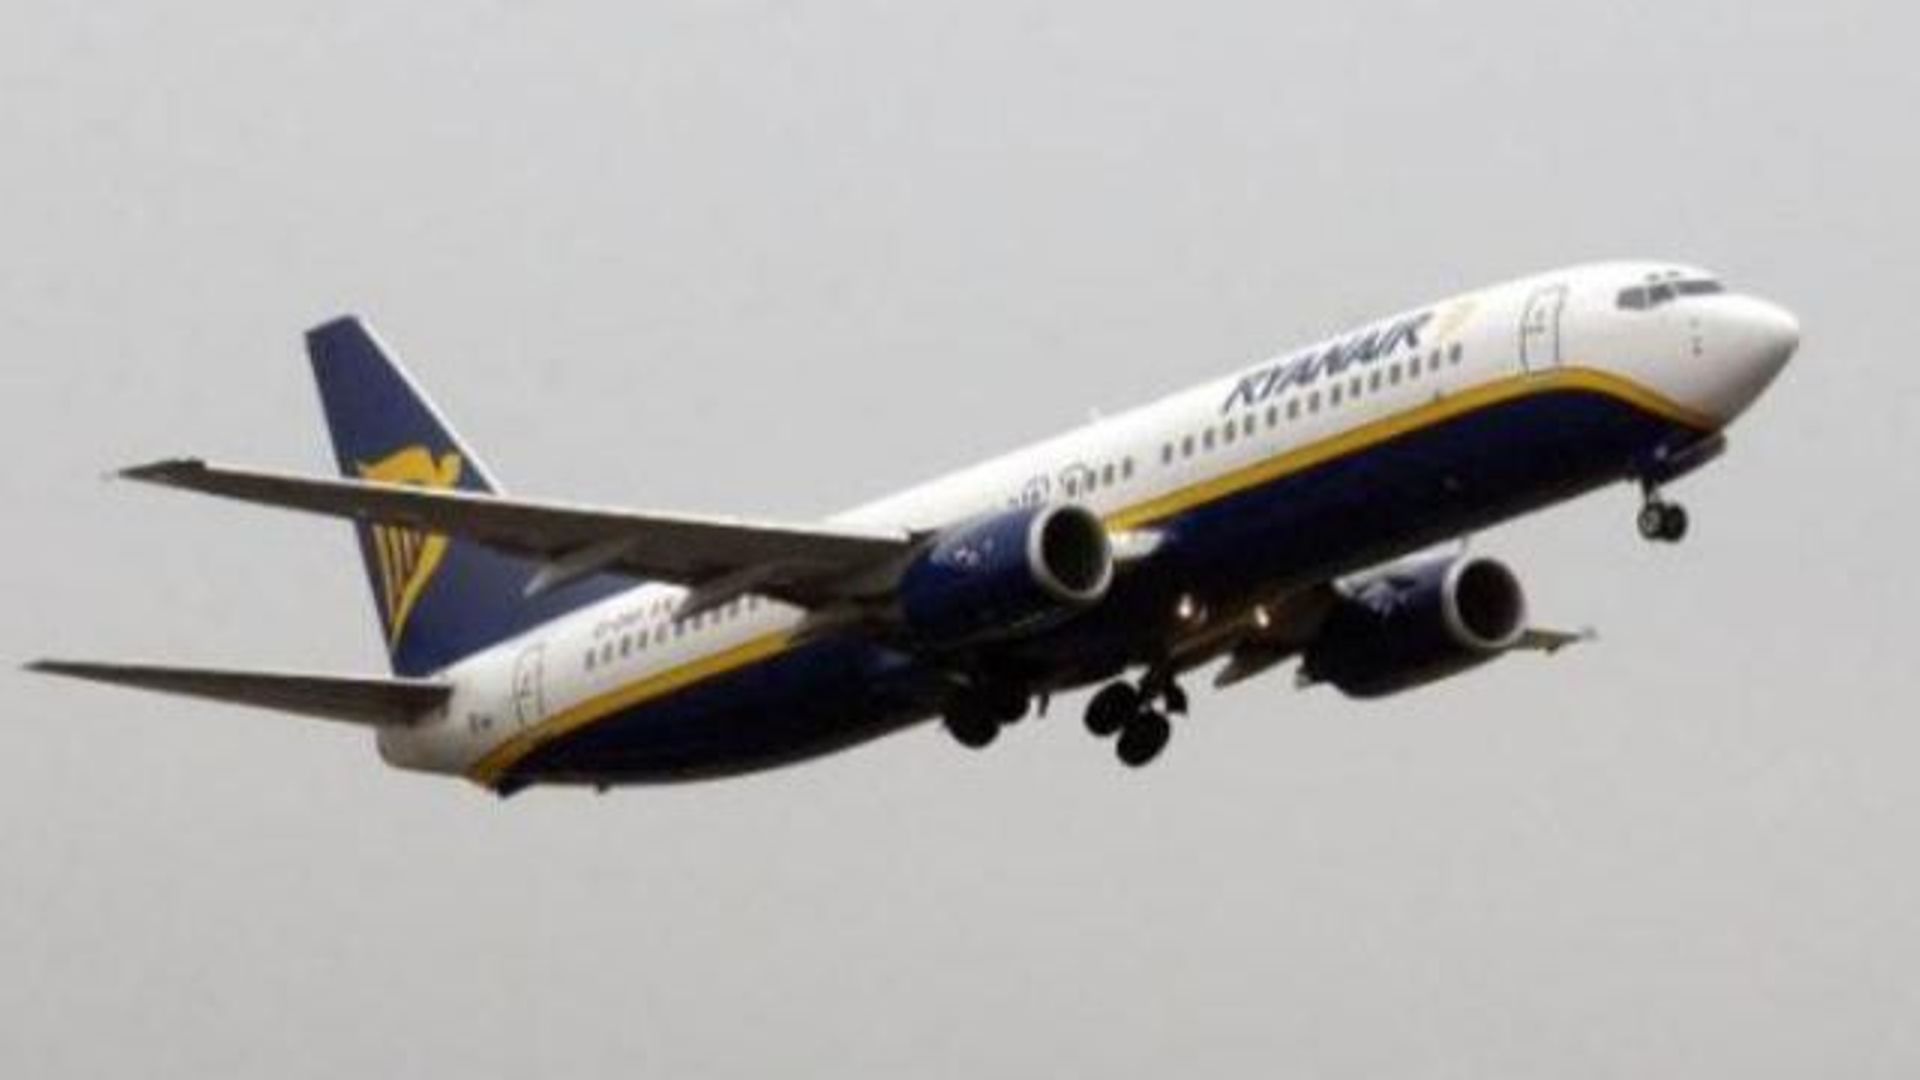 Indemnisation des passagers - Ryanair dénonce un arrêt qui "va faire augmenter le prix des billets"